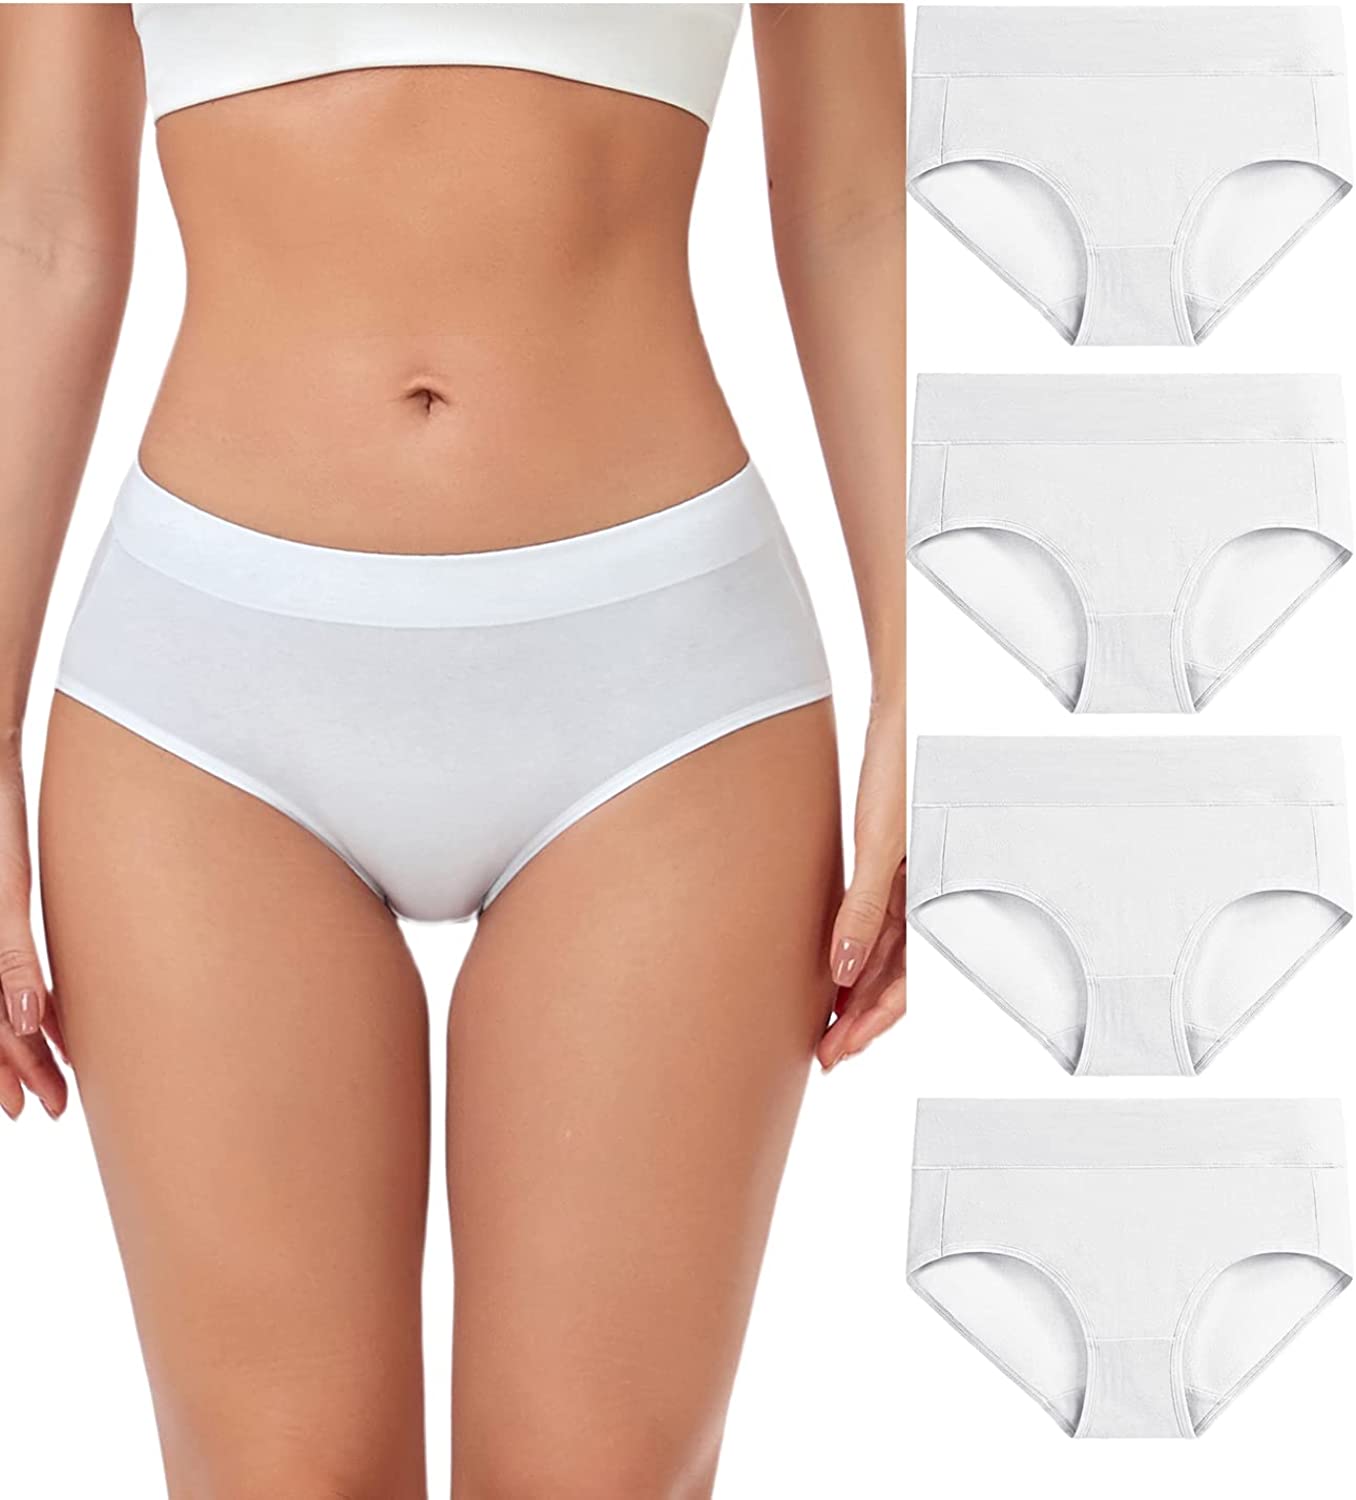 wirarpa Women's Cotton Stretch Underwear Soft Mid Rise Briefs